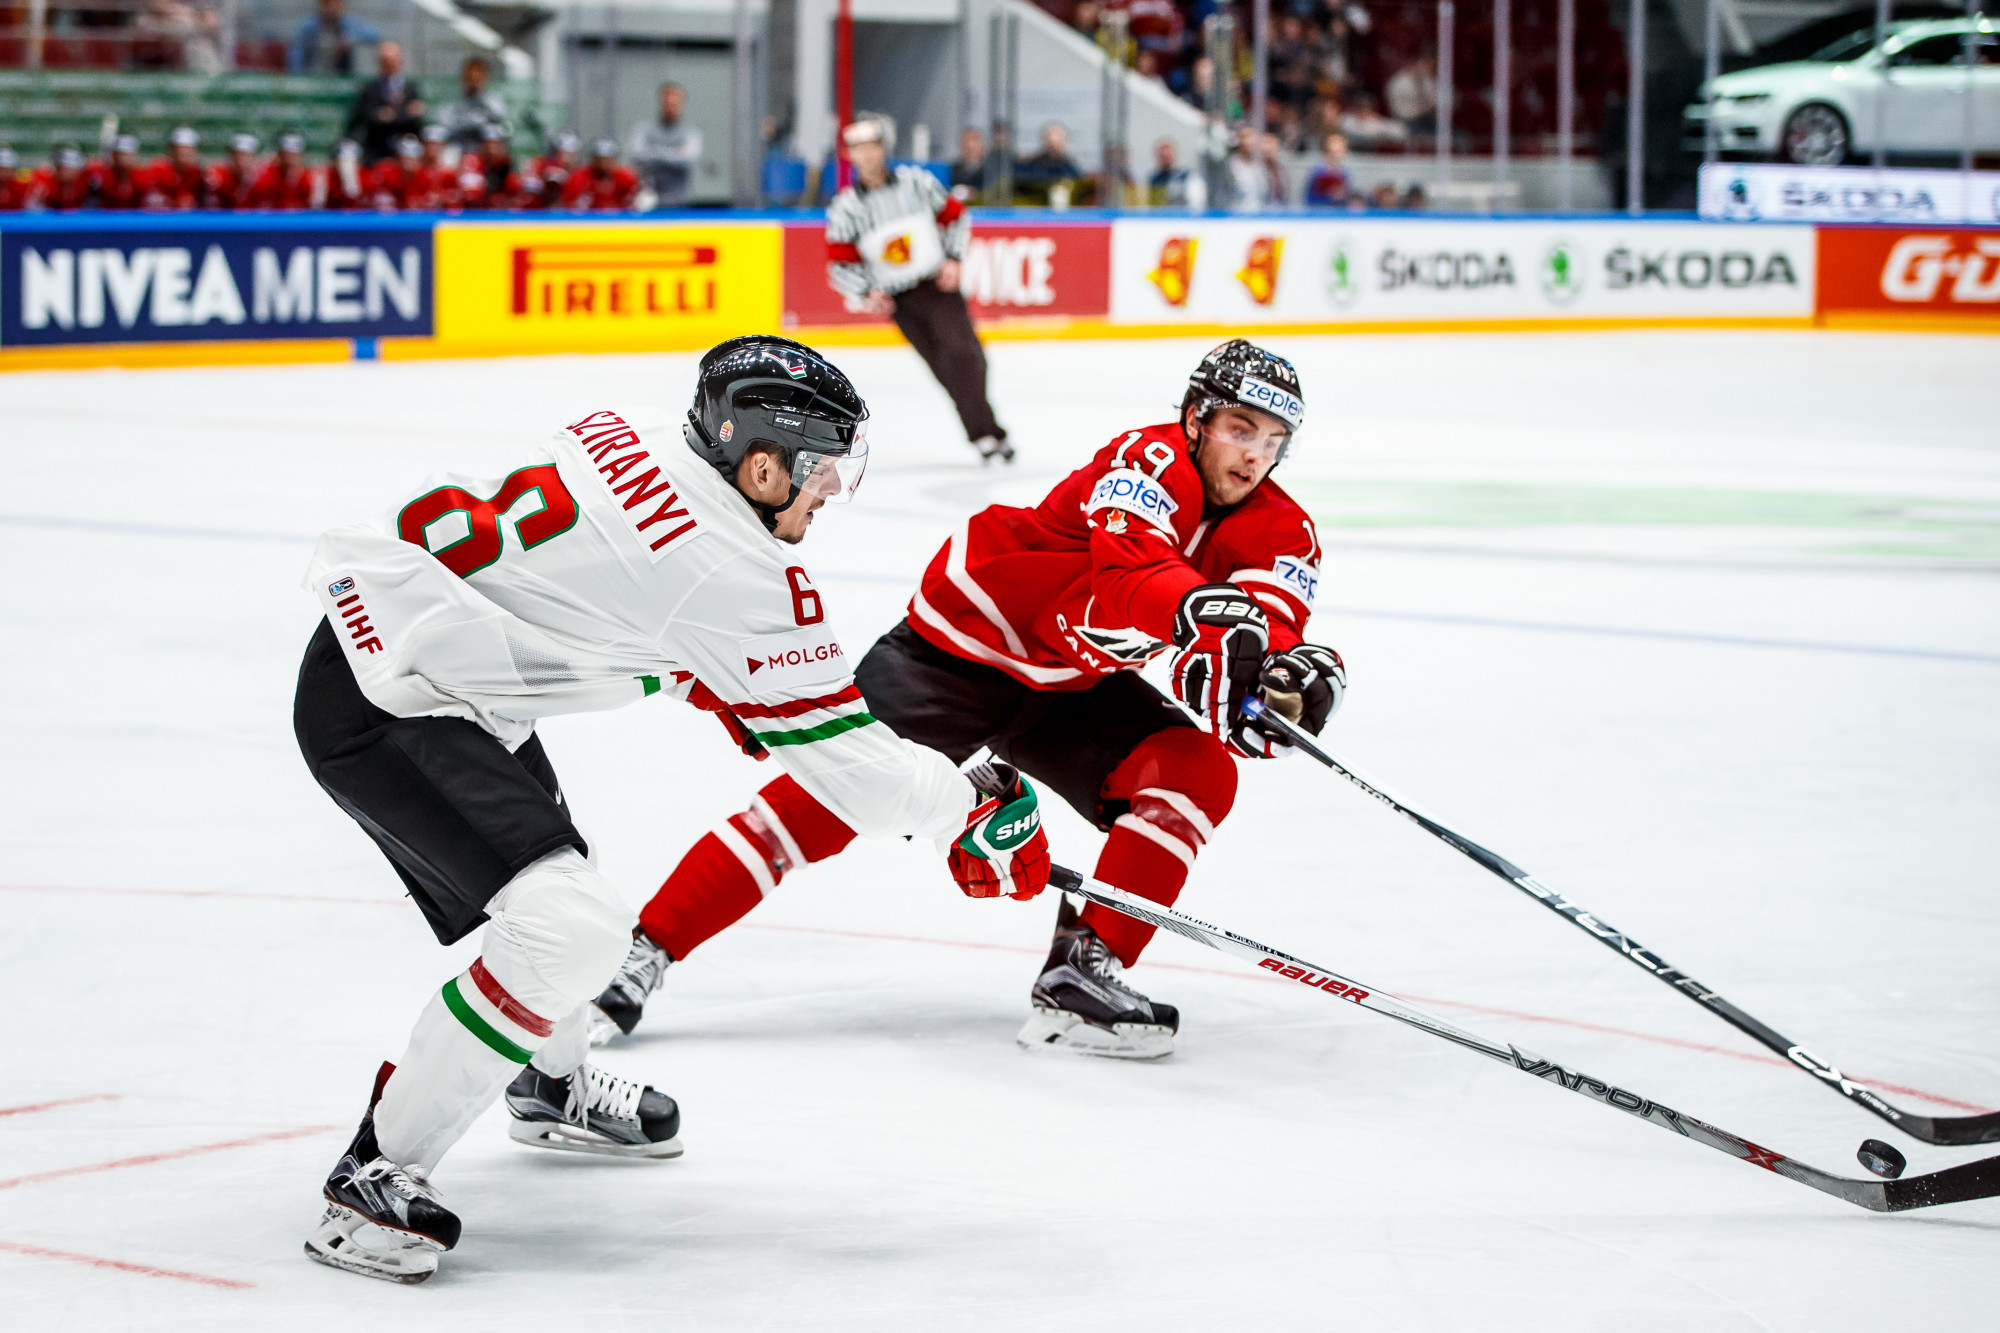 Magyarország–Kanada jégkorongmeccs lesz májusban az MVM Dome-ban